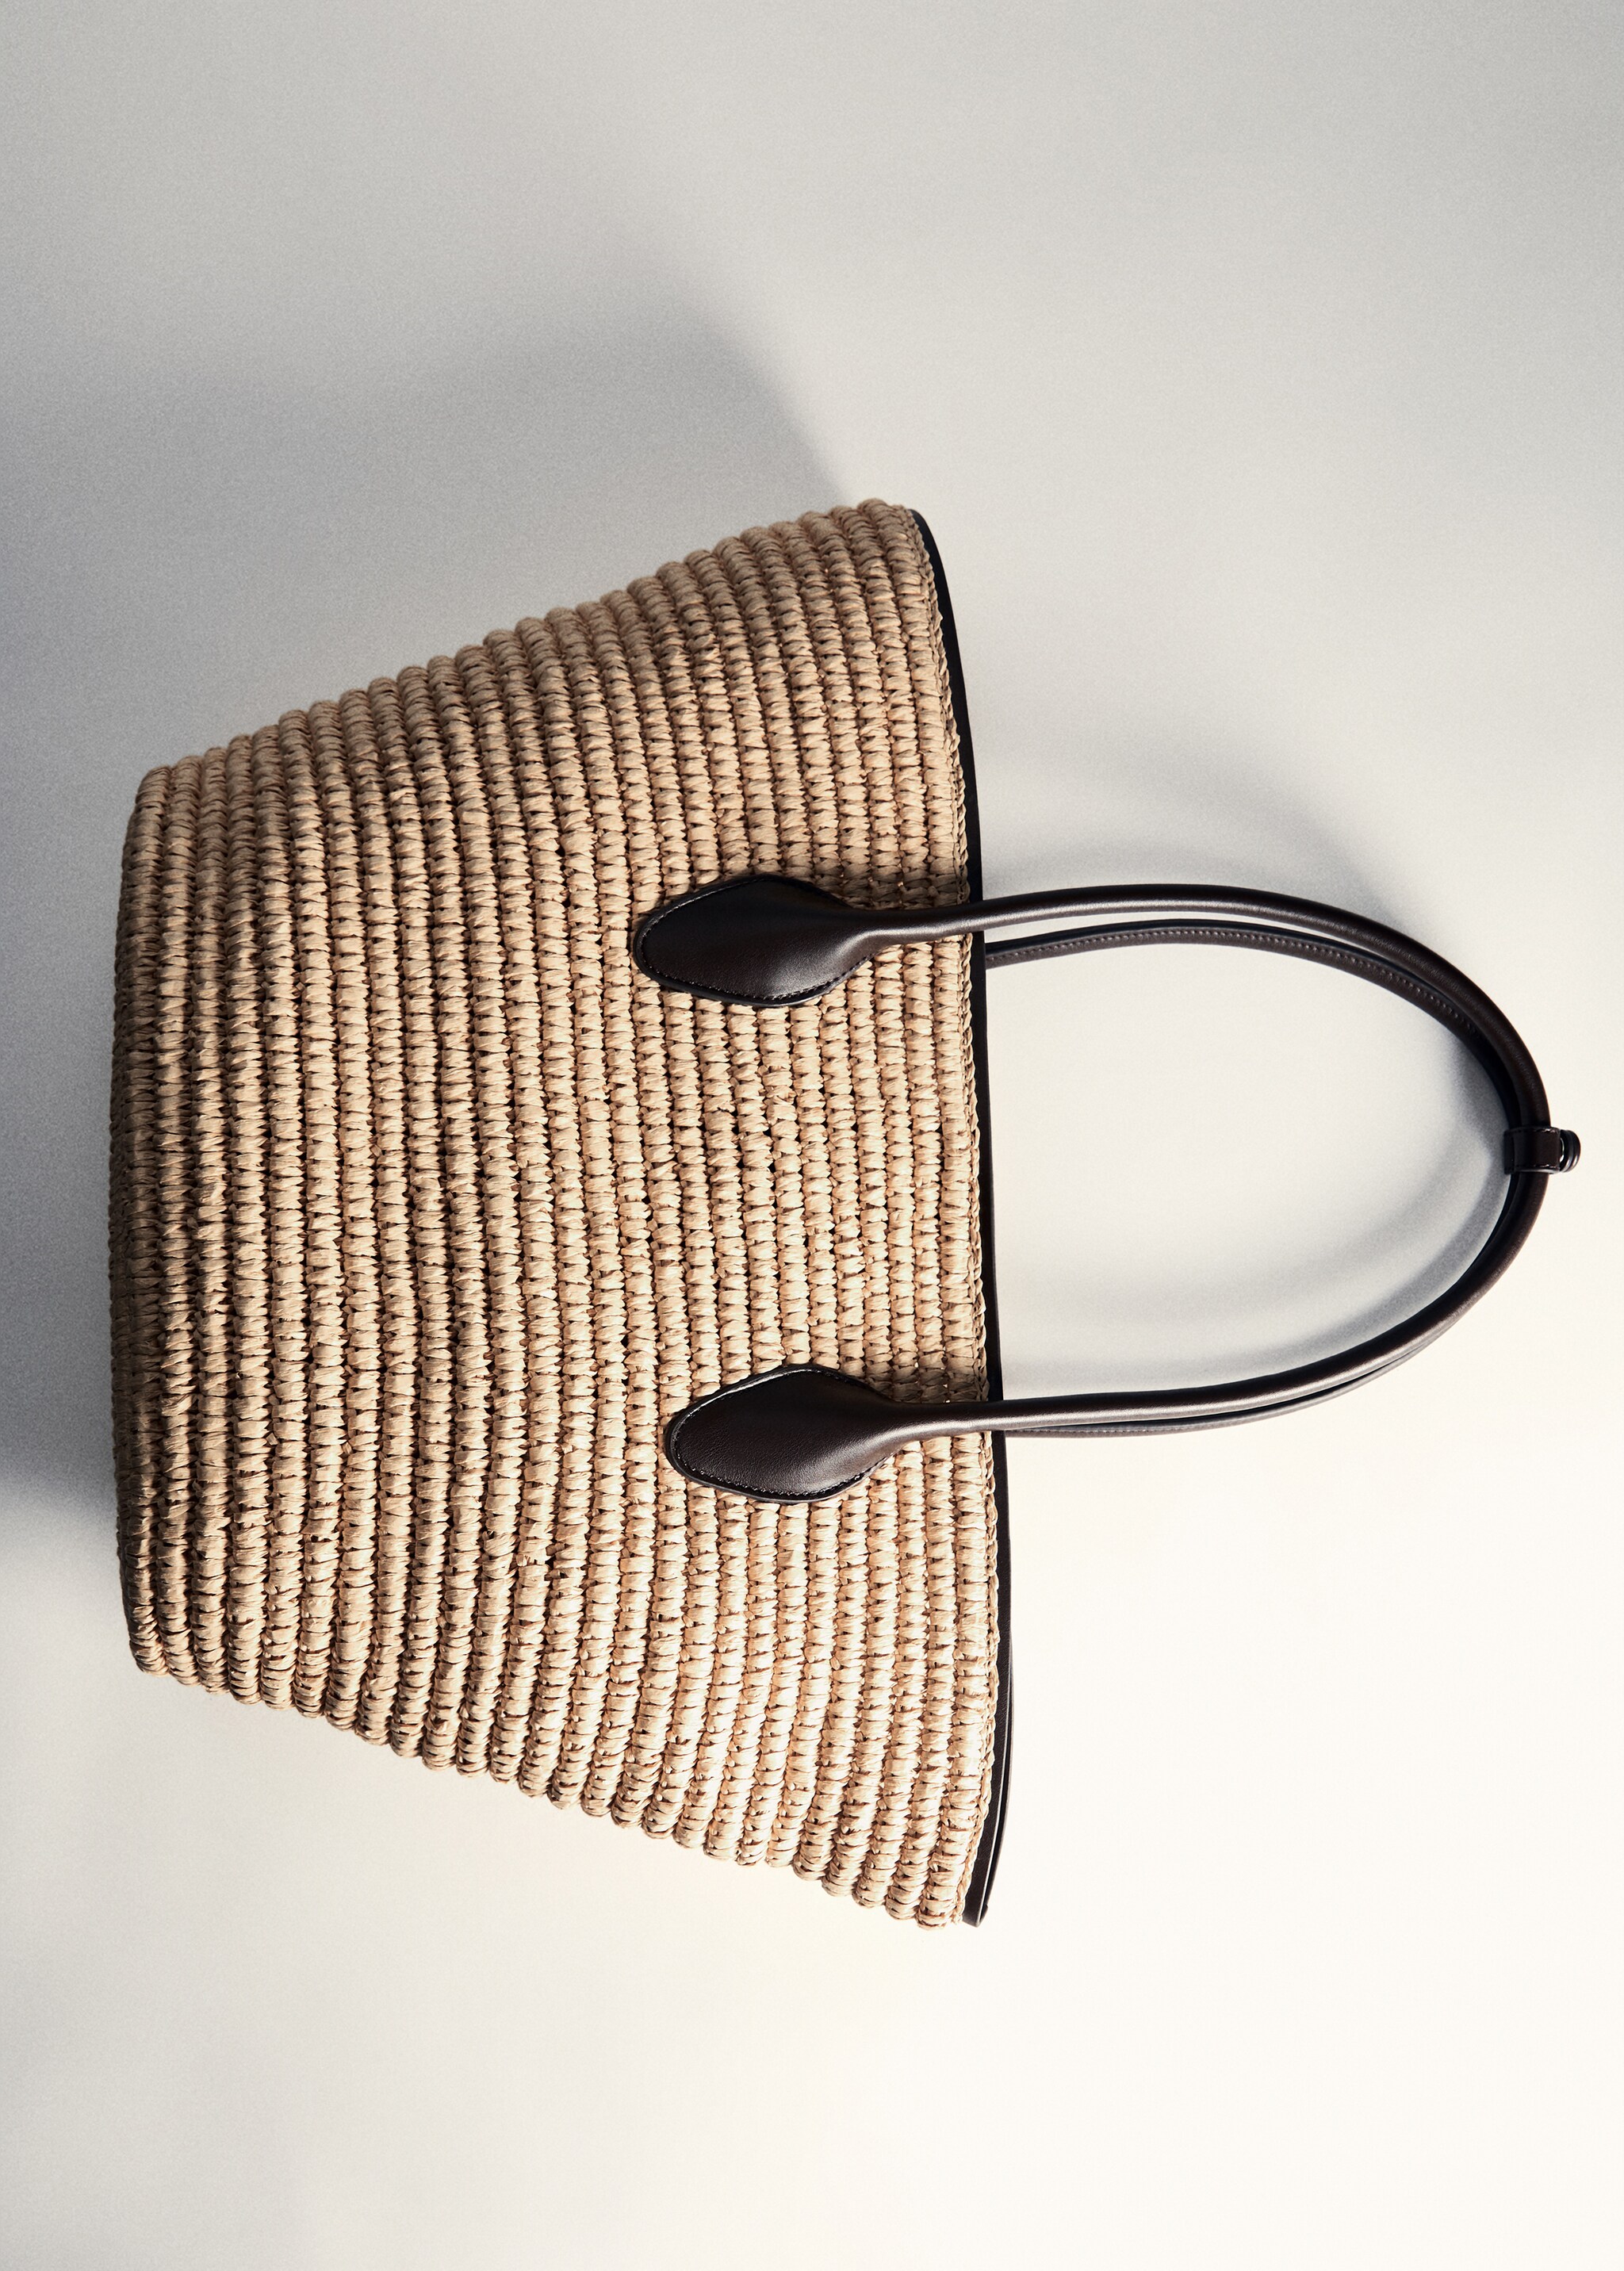 Natural fibre maxi tote bag - Details of the article 5